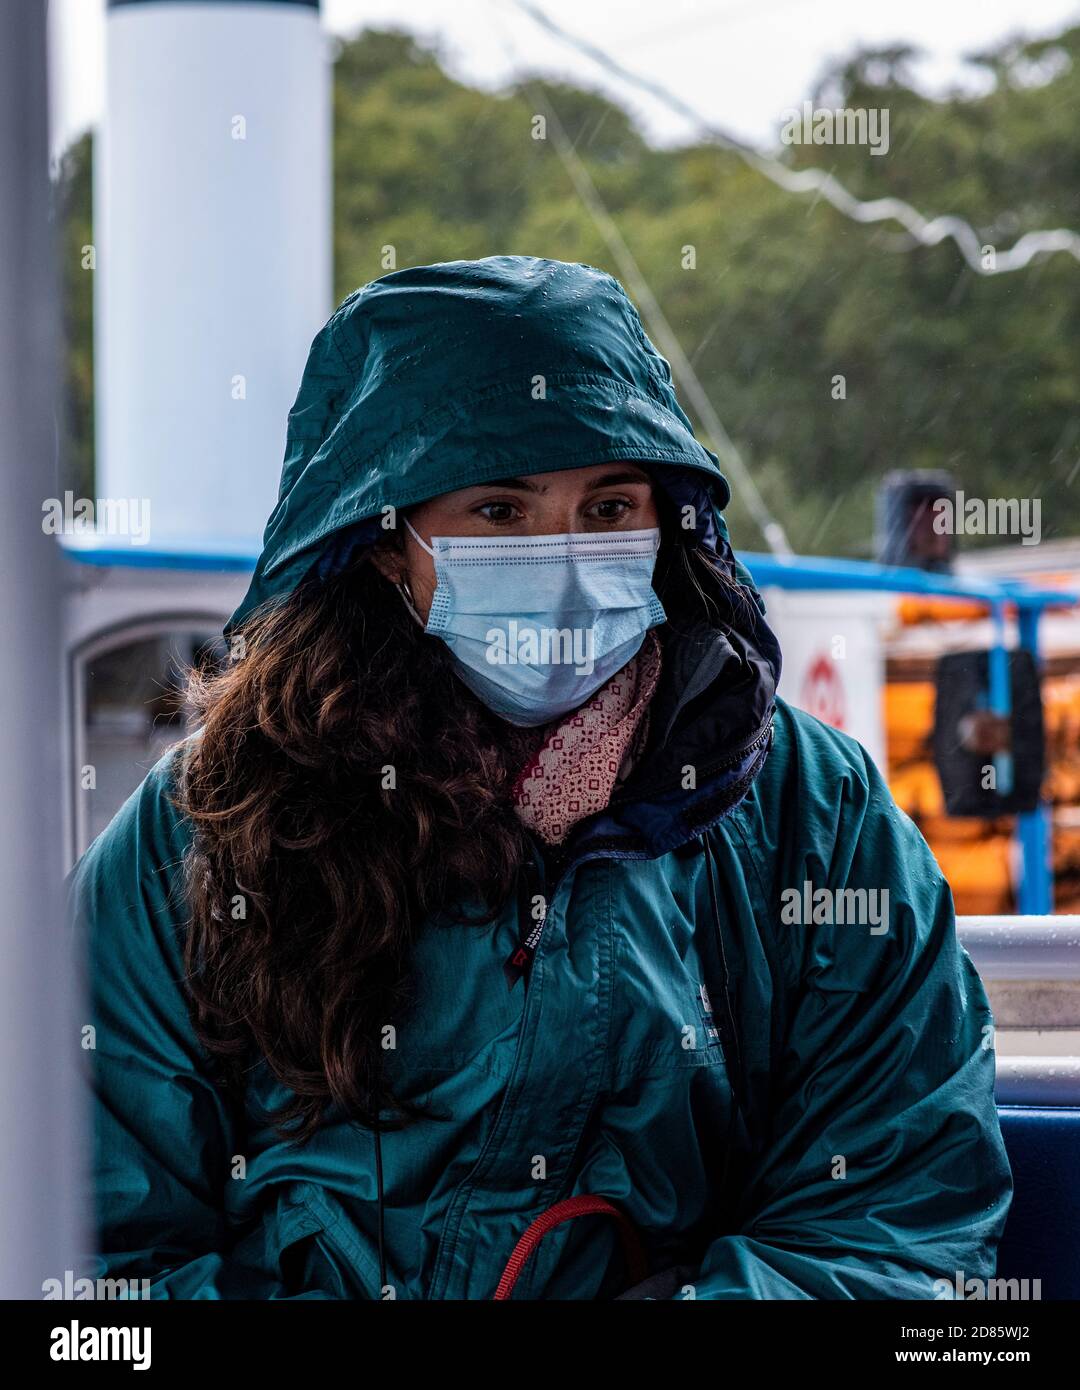 Woman wearing face mask and raincoat, Wroxham, Norfolk, England, UK Stock Photo